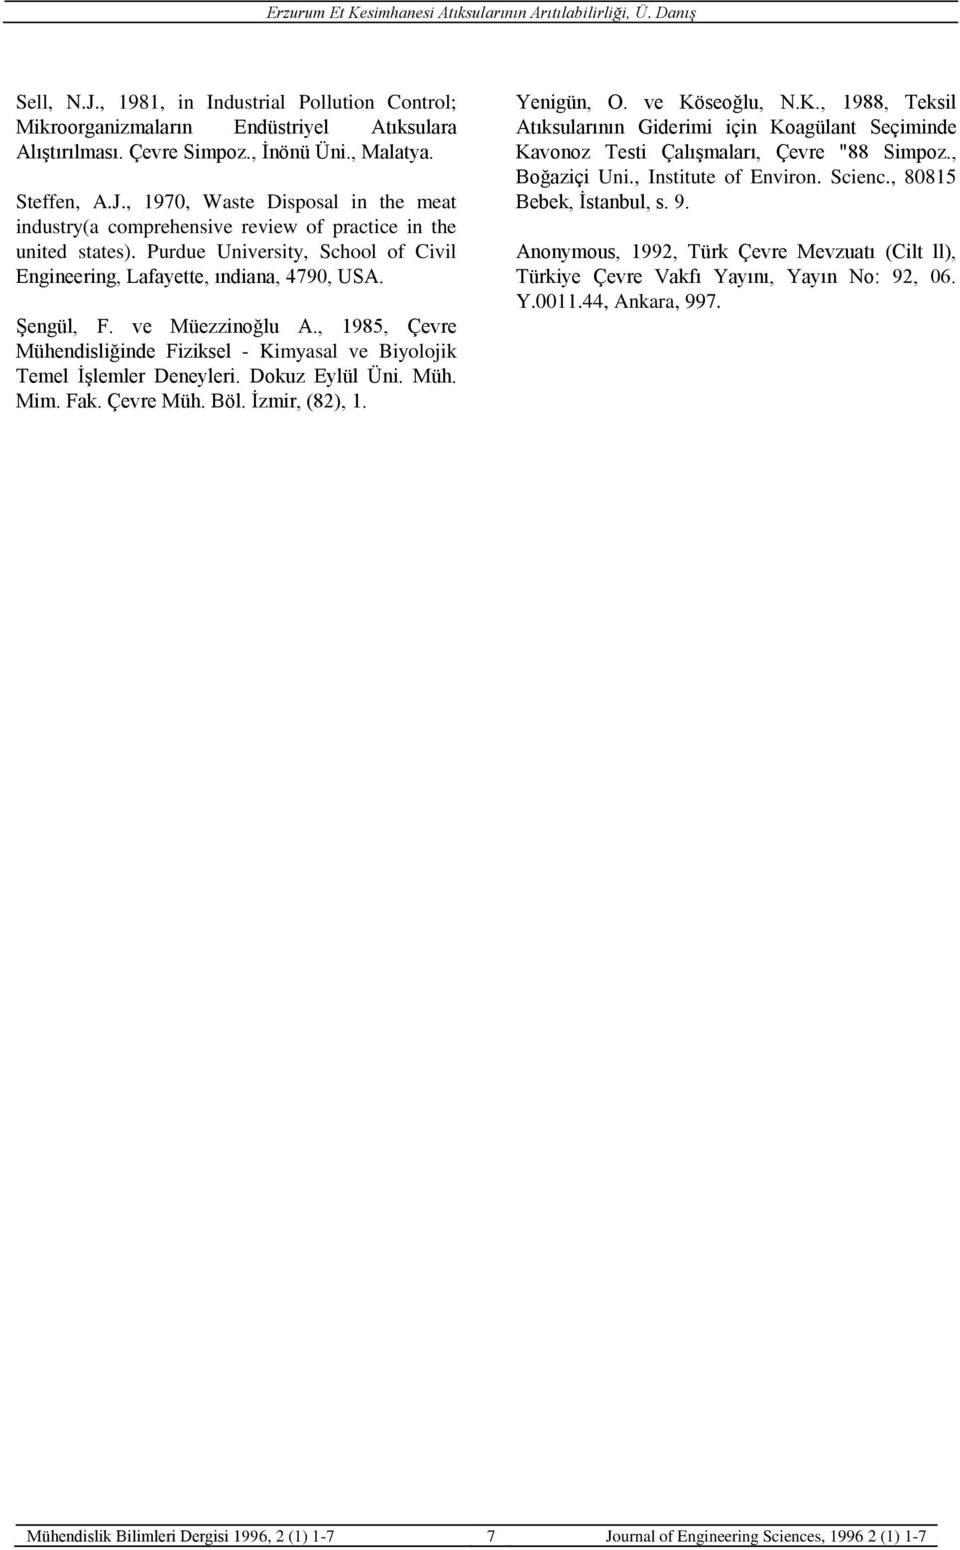 Dokuz Eylül Üni. Müh. Mim. Fak. Çevre Müh. Böl. İzmir, (82), 1. Yenigün, O. ve Köseoğlu, N.K., 1988, Teksil Atıksularının Giderimi için Koagülant Seçiminde Kavonoz Testi Çalışmaları, Çevre "88 Simpoz.